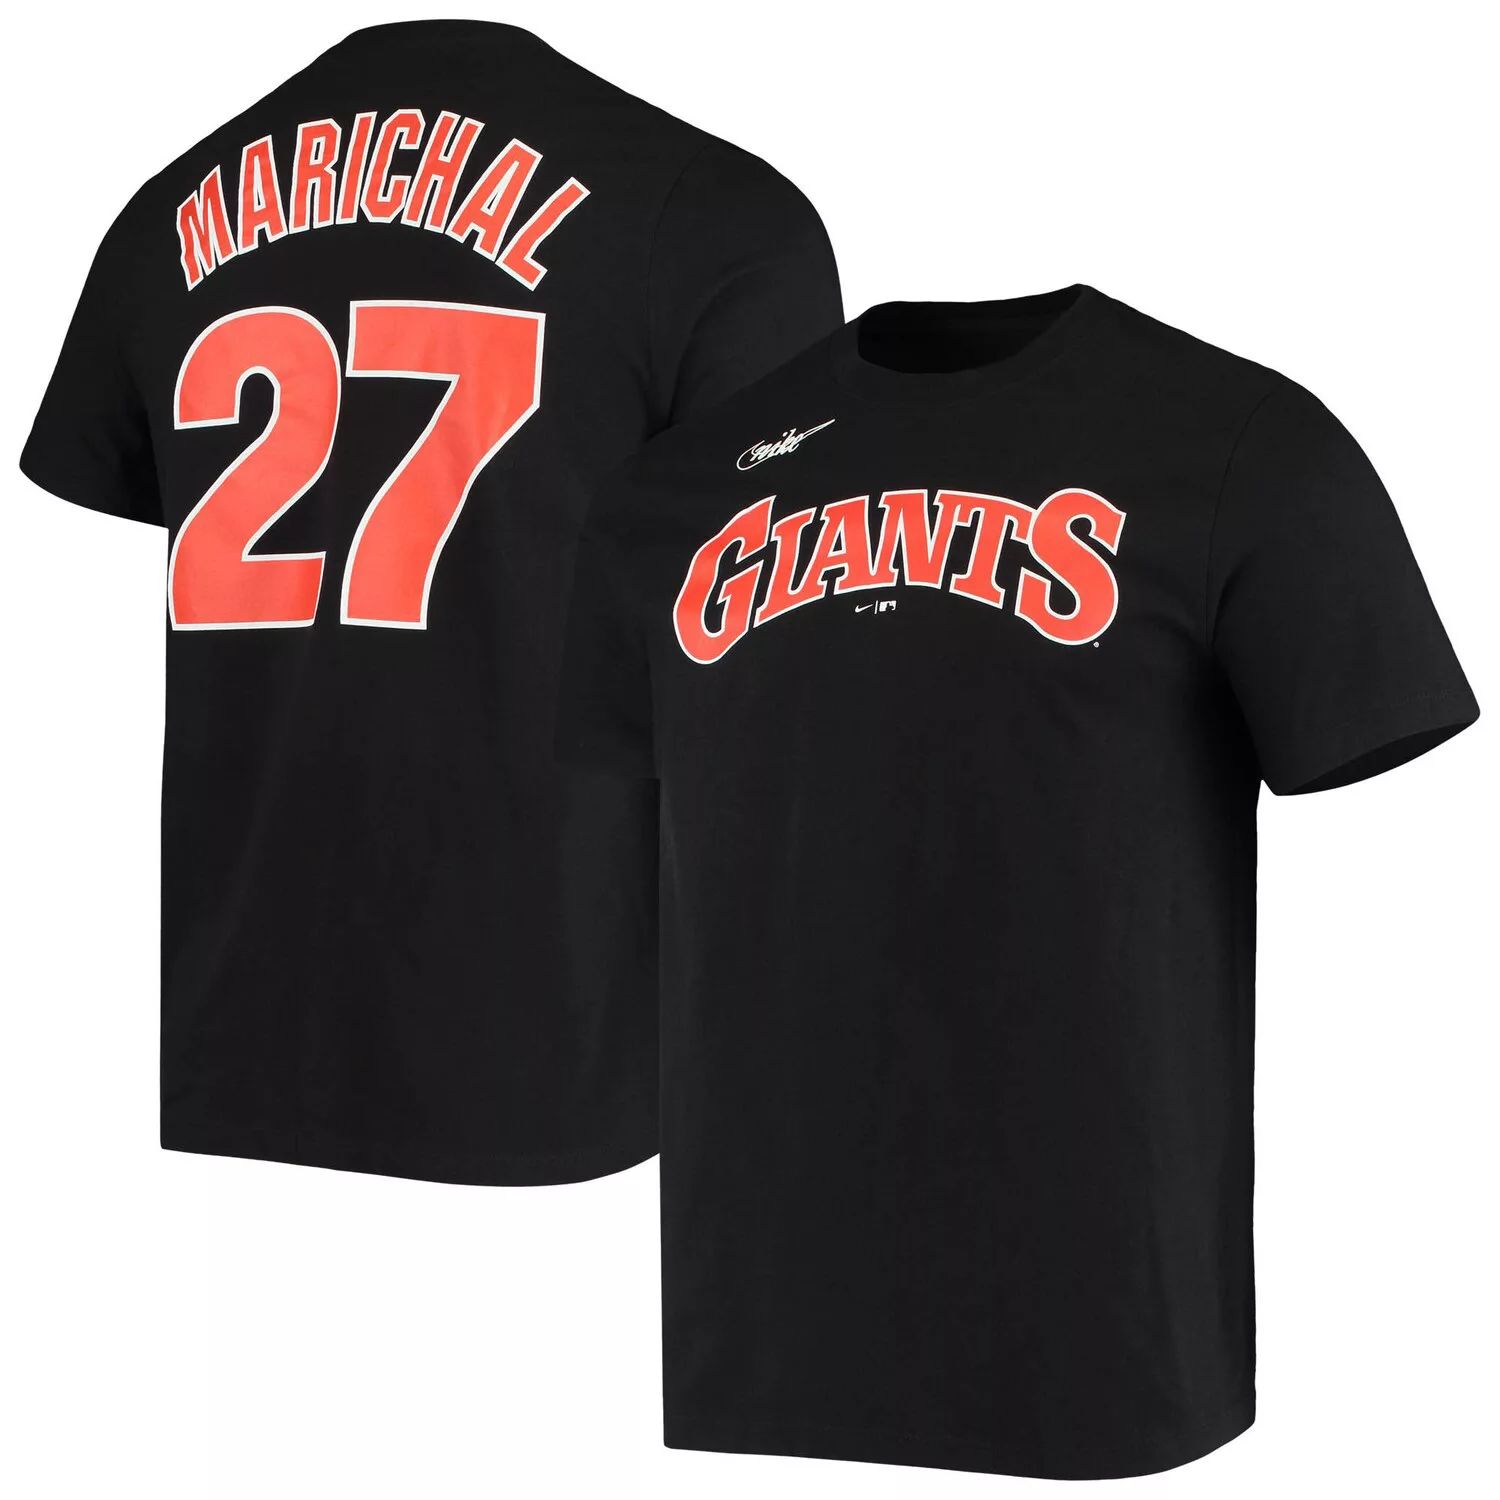 Мужская черная футболка Nike Juan Marichal San Francisco Giants с именем и номером